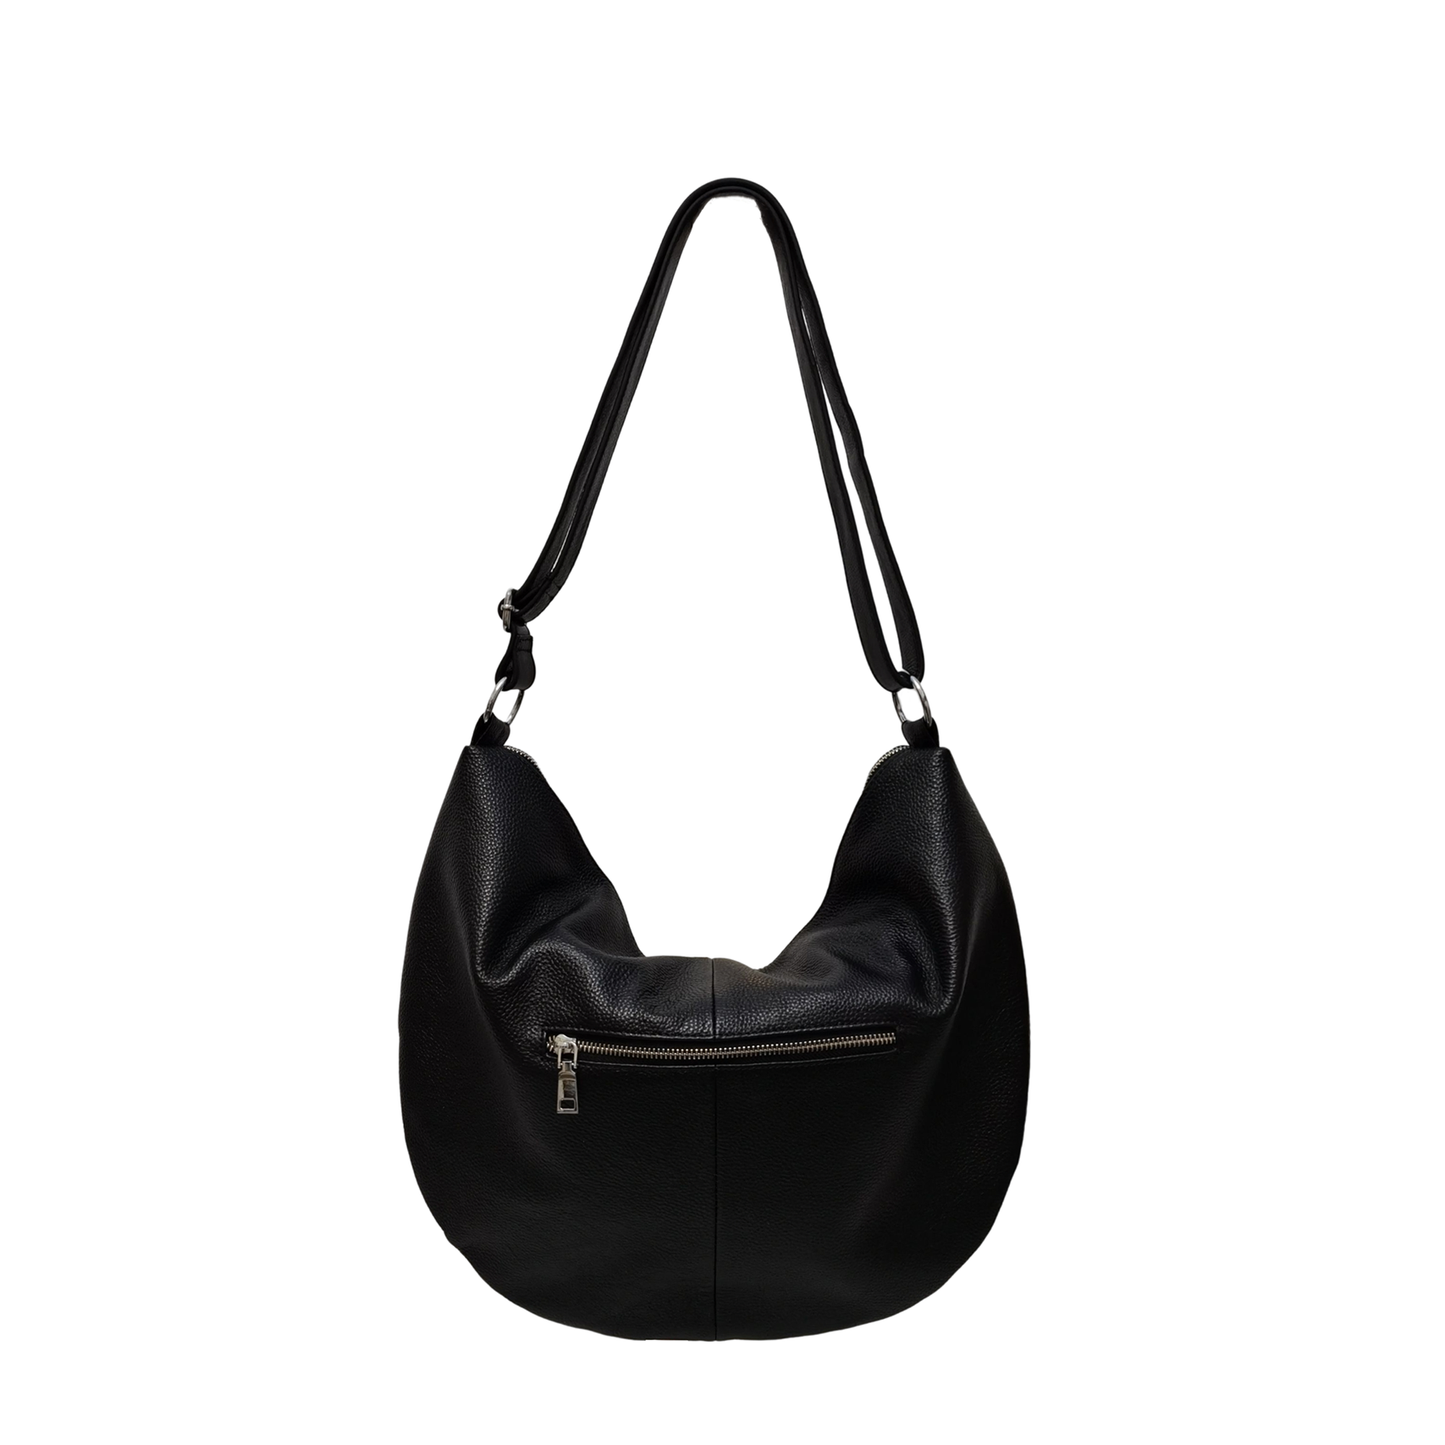 Women's genuine cowhide leather handbag Shell tassel design